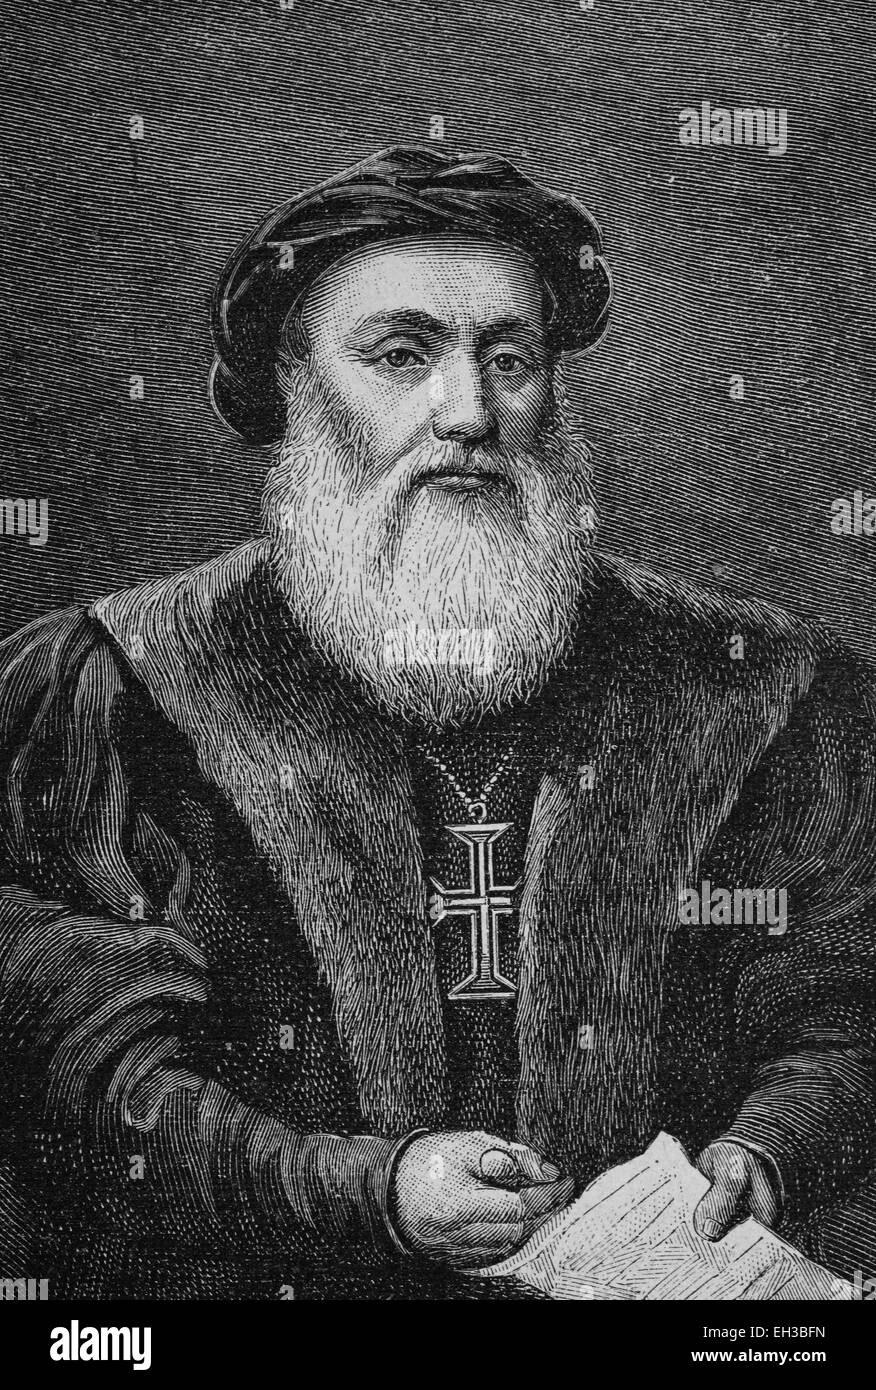 Dom Vasco da Gama, Graf von Vidigueira (1469-1524) war ein portugiesischer Seefahrer und Entdecker des Seeweges nach Indien. Stockfoto